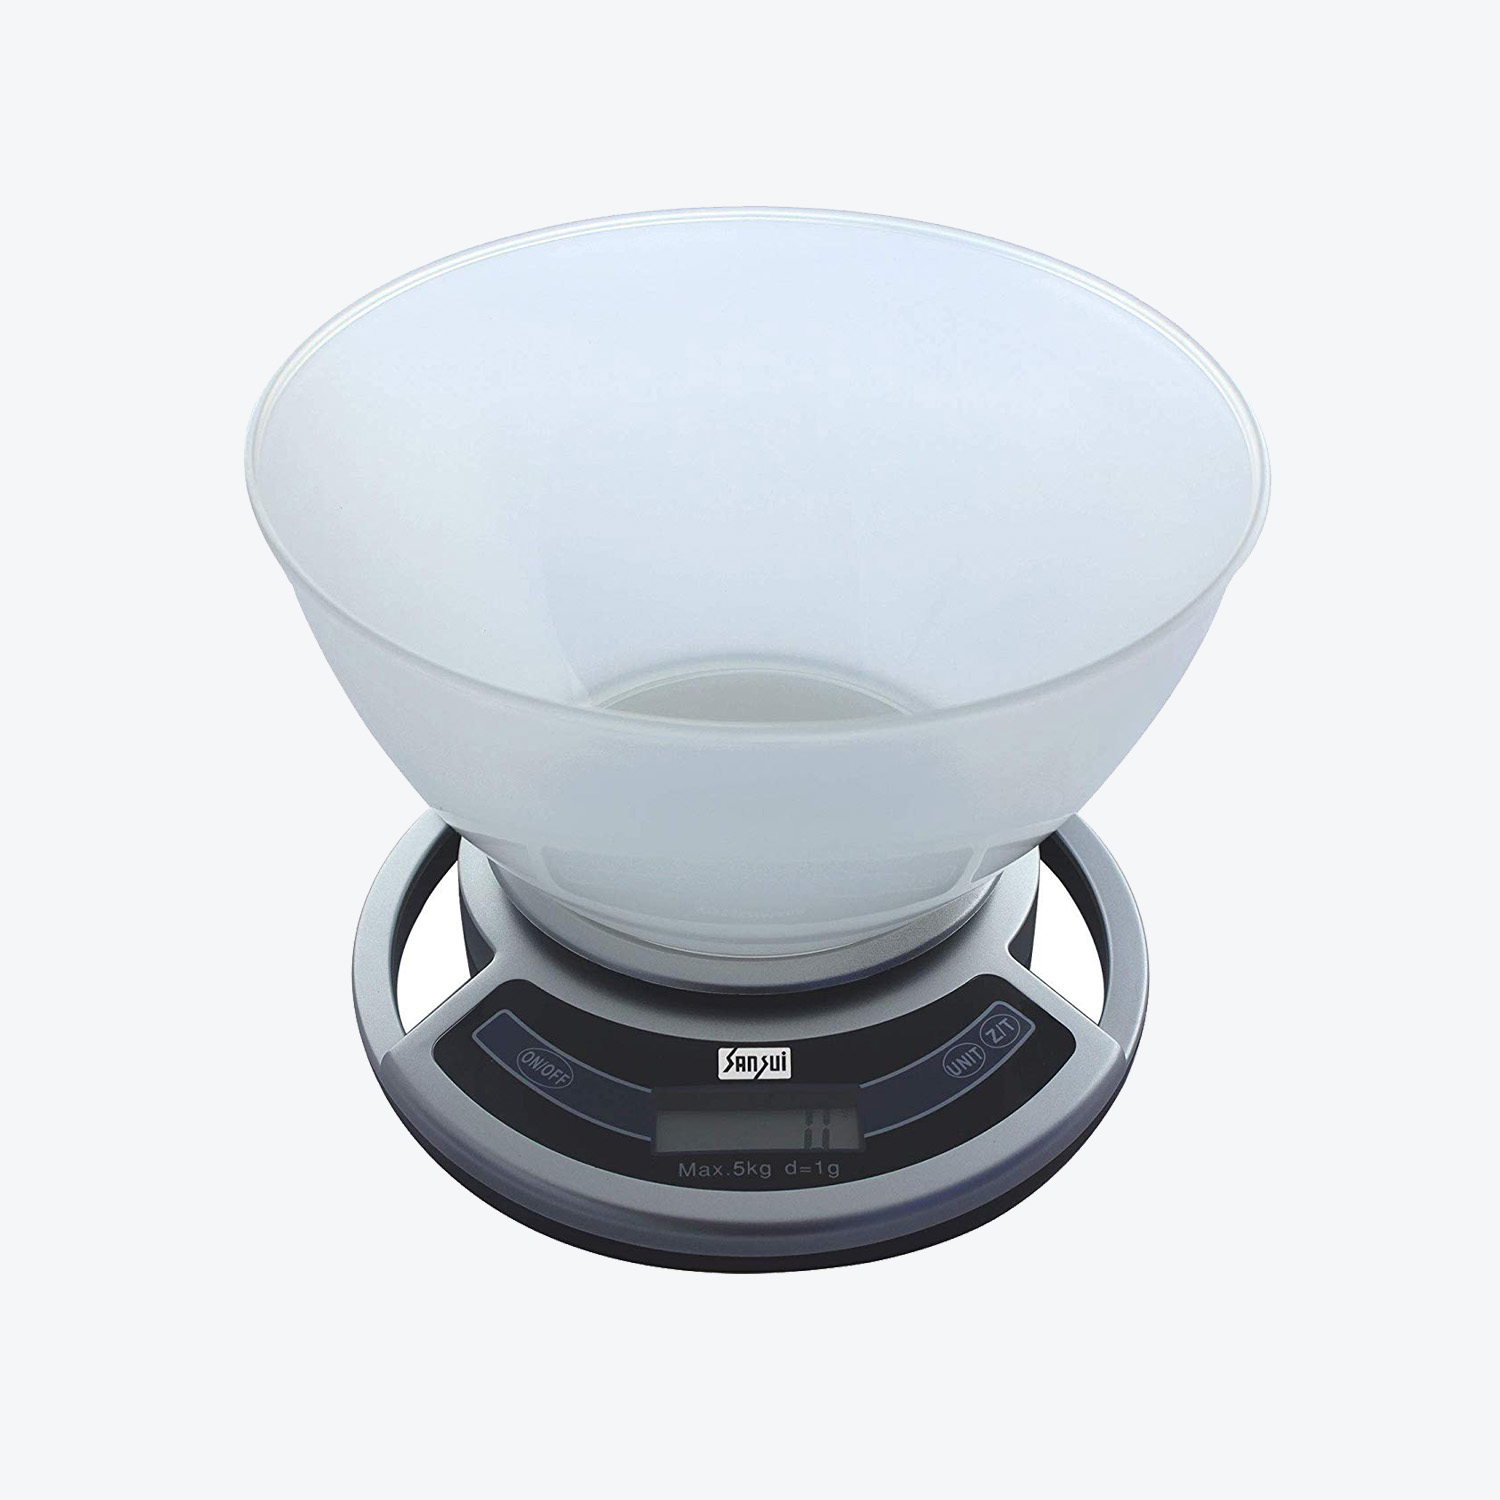 Sansui Kitchen Scale Bowl